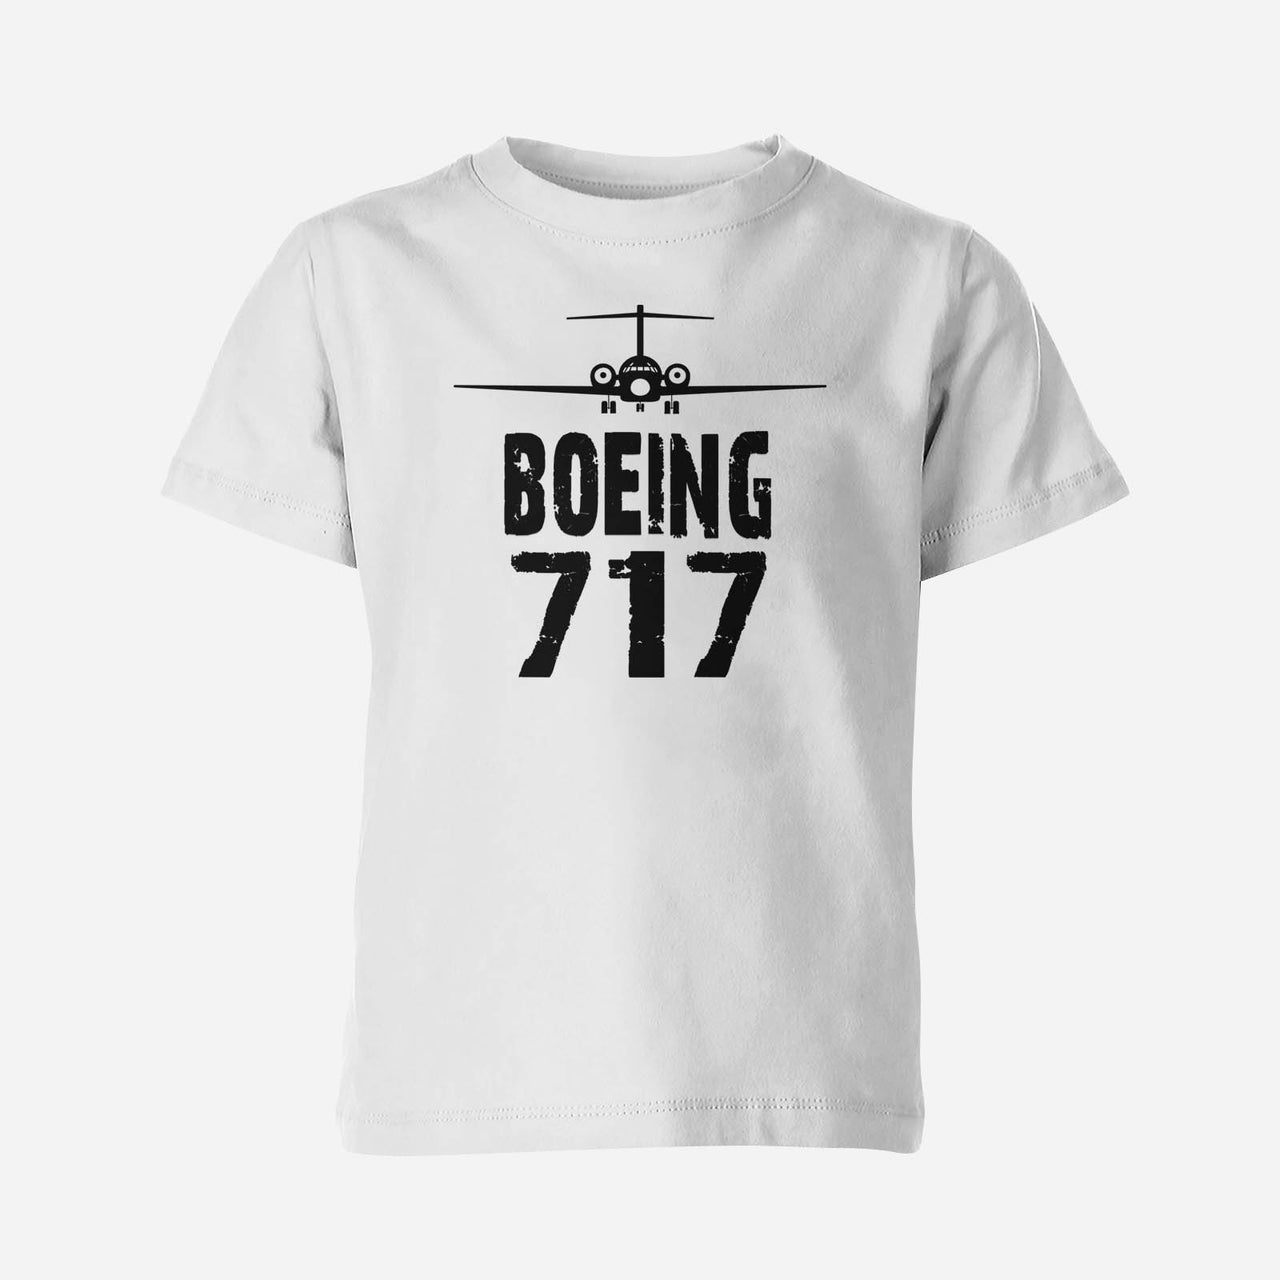 Boeing 717 & Plane Designed Children T-Shirts